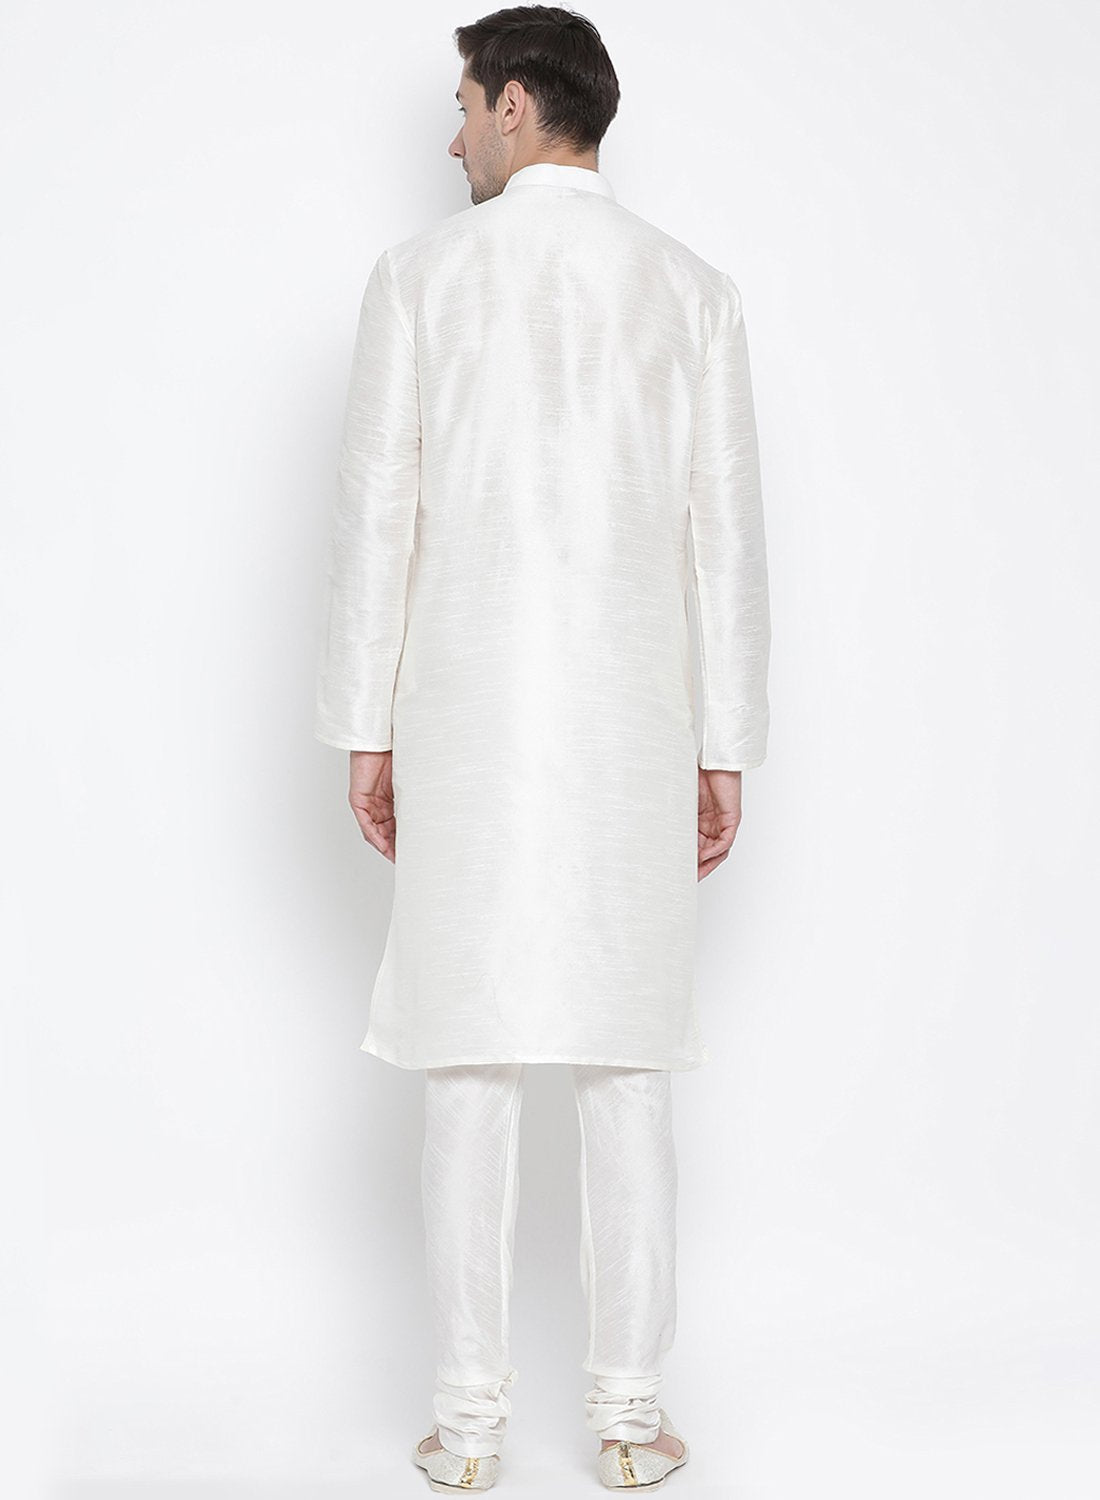 Men's White Silk Blend Kurta and Pyjama Set - Vastramay